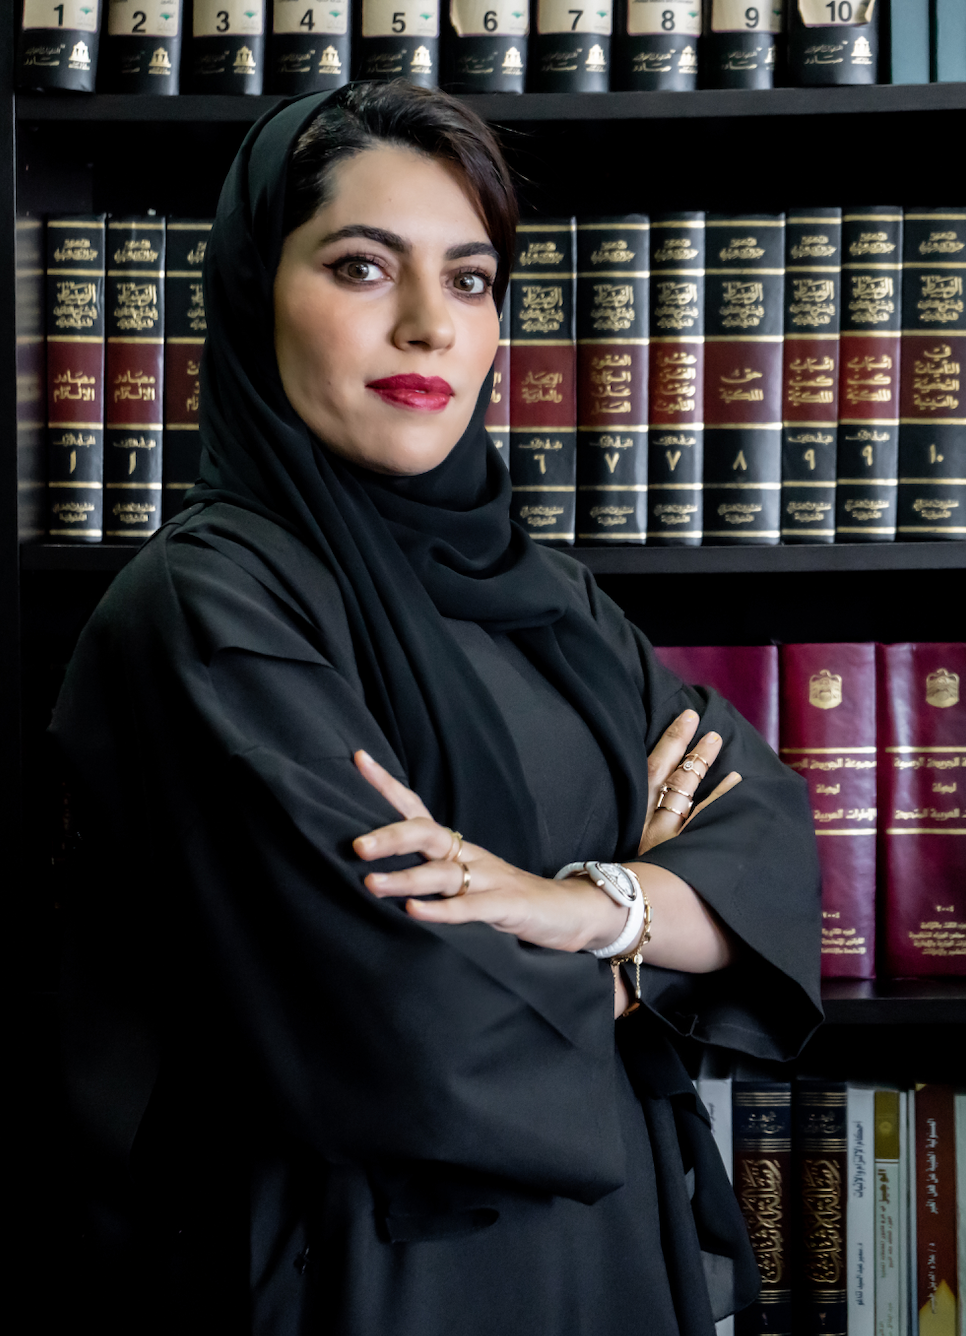 المحامية الإماراتية عبير شريف تطلق التطبيق المحمول للحصول على المشورة القانونية في متناول يدك